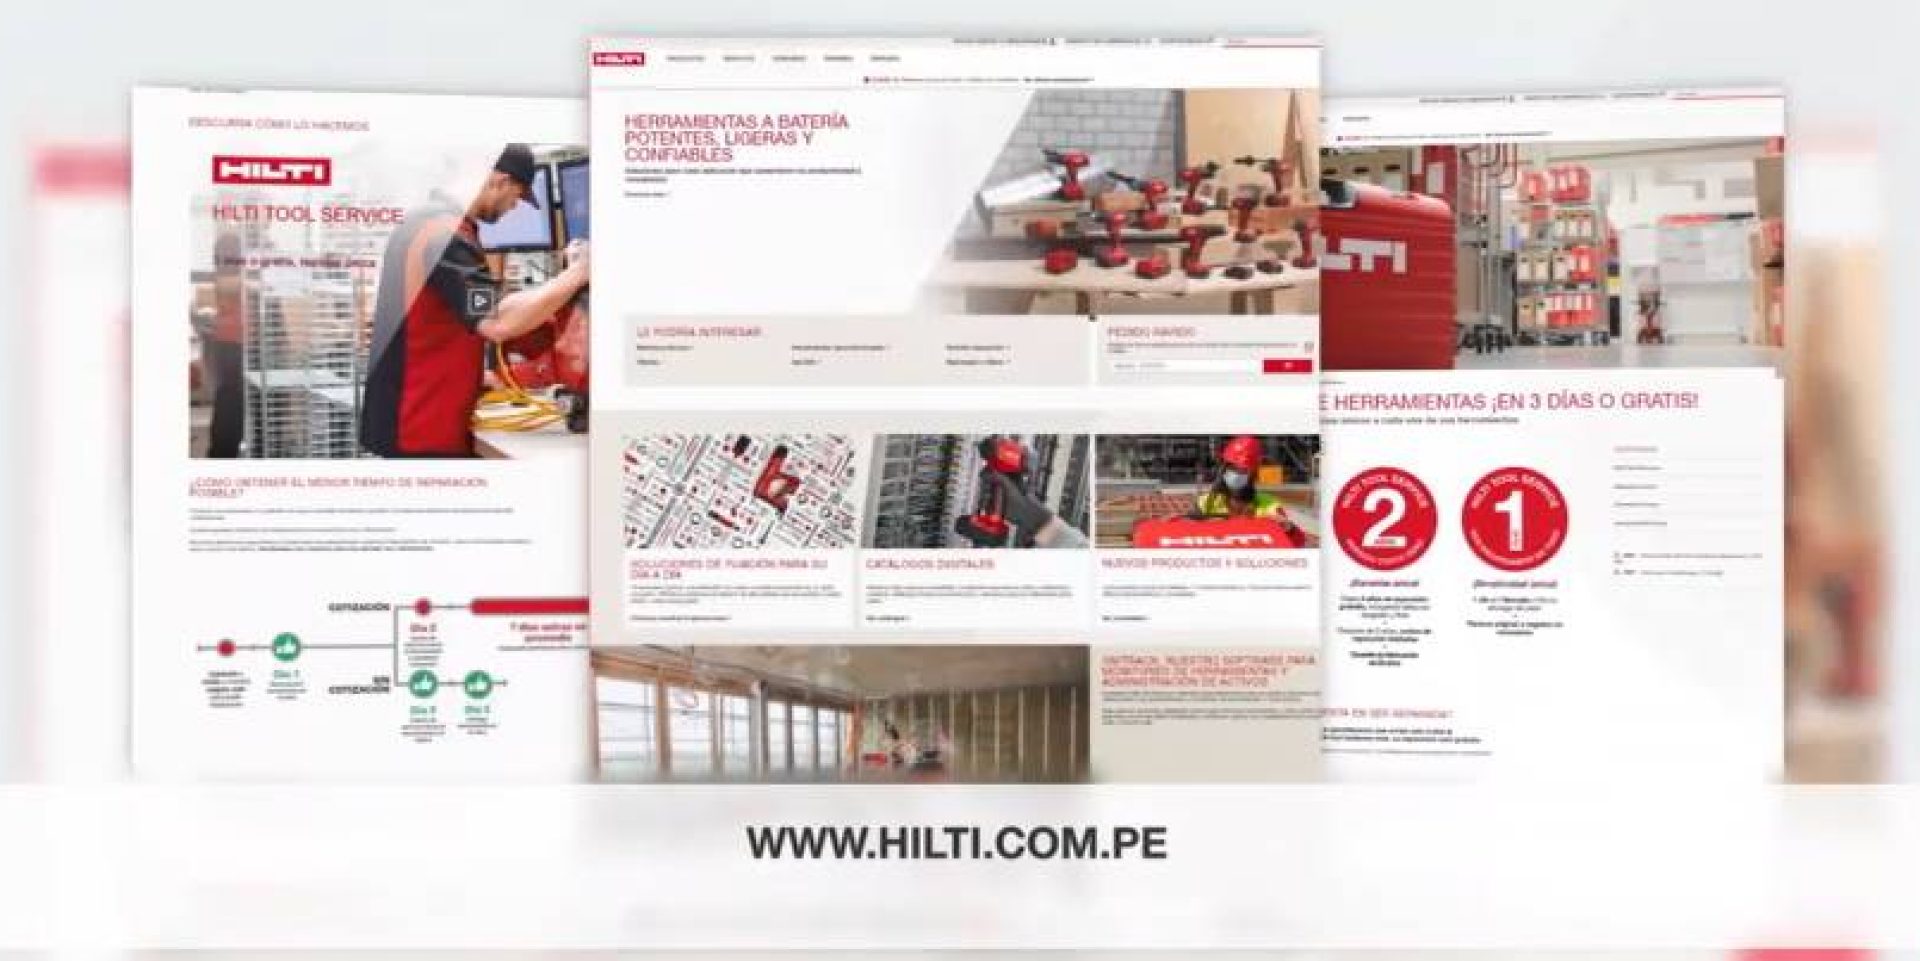 hilti.com.pe es mucho más que una tienda en línea